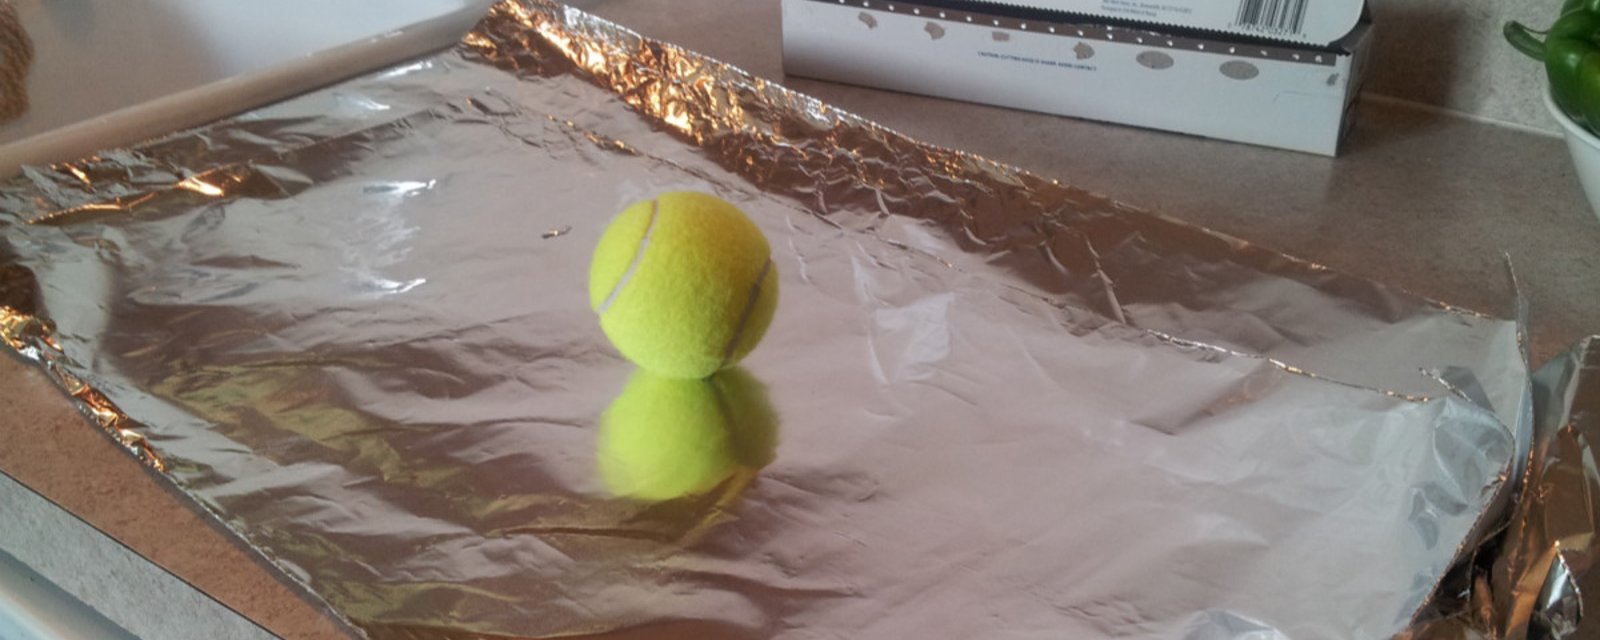 Elle enveloppe une balle de tennis avec du papier d’aluminium et la met dans la sécheuse